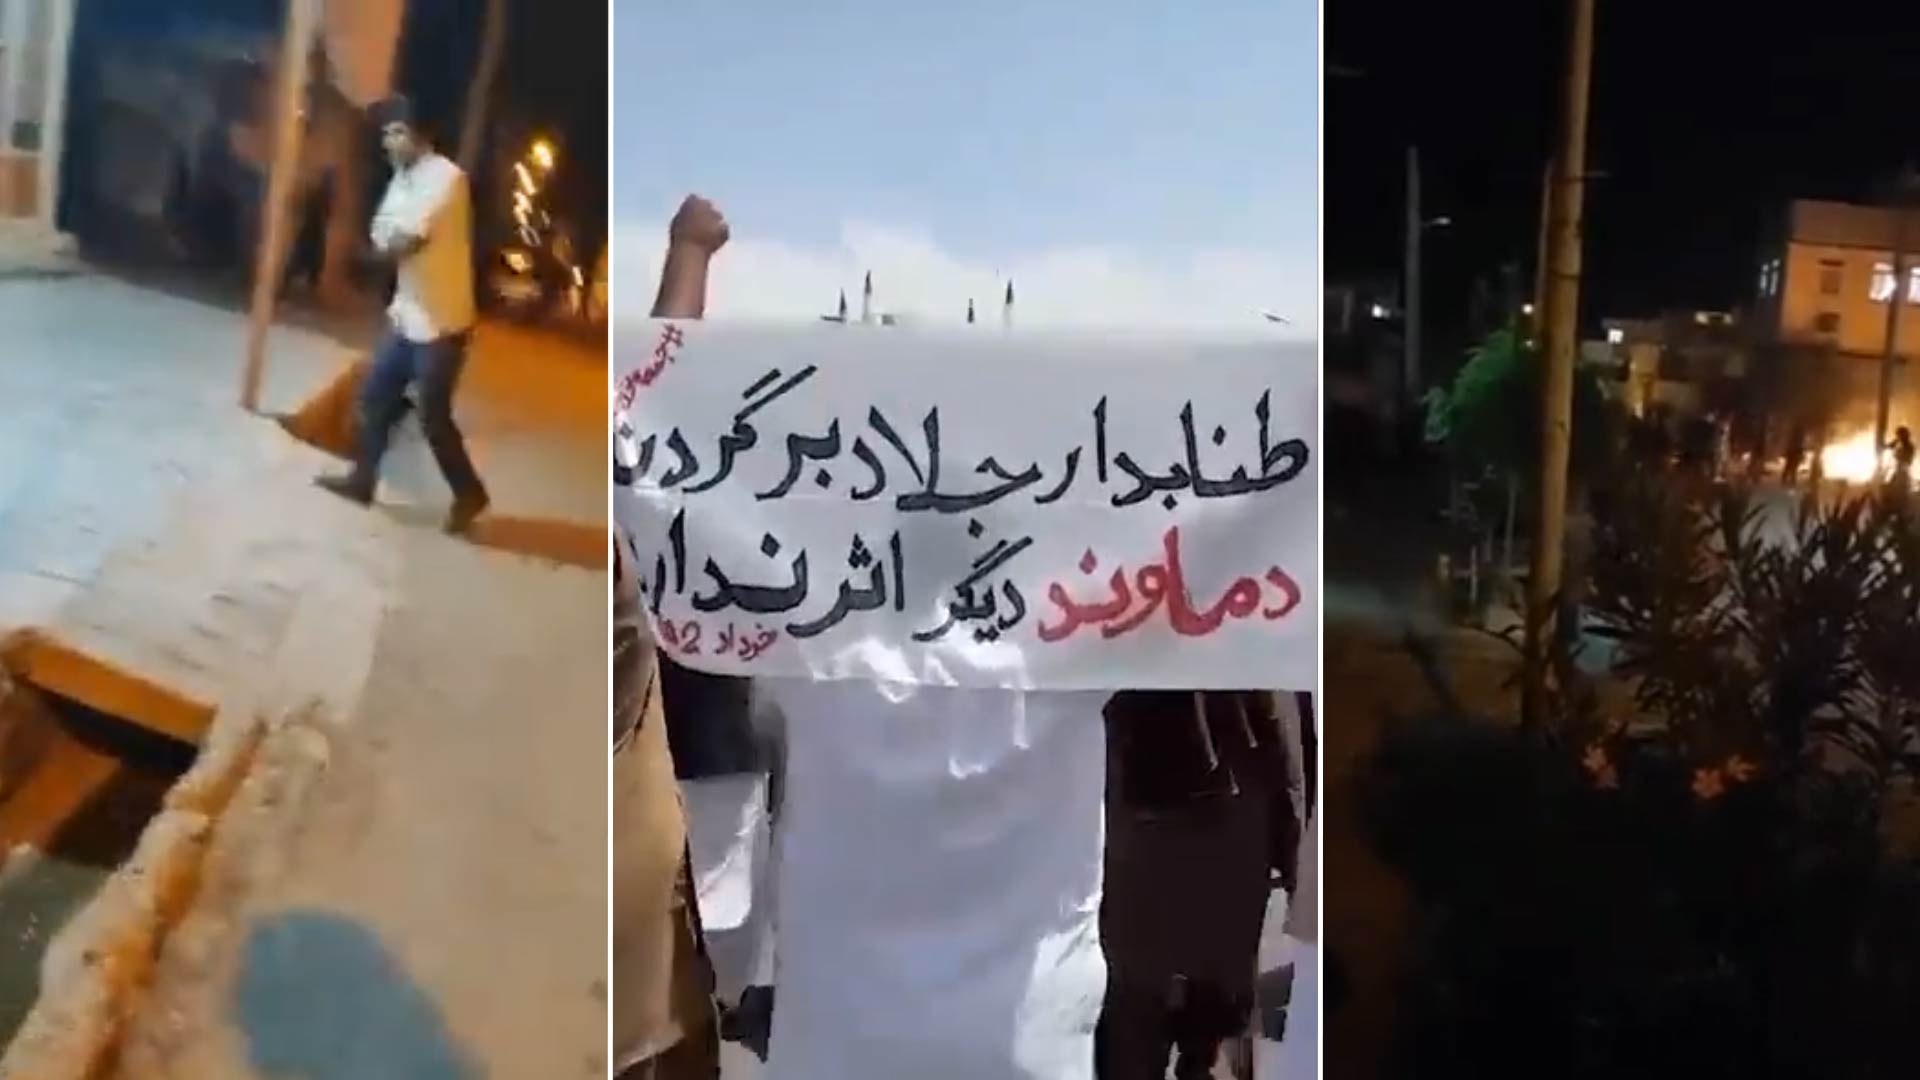 El régimen de Irán reprimió a manifestantes que protestaban por la muerte de un estudiante: “Hermano asesinado, voy a vengar tu sangre”